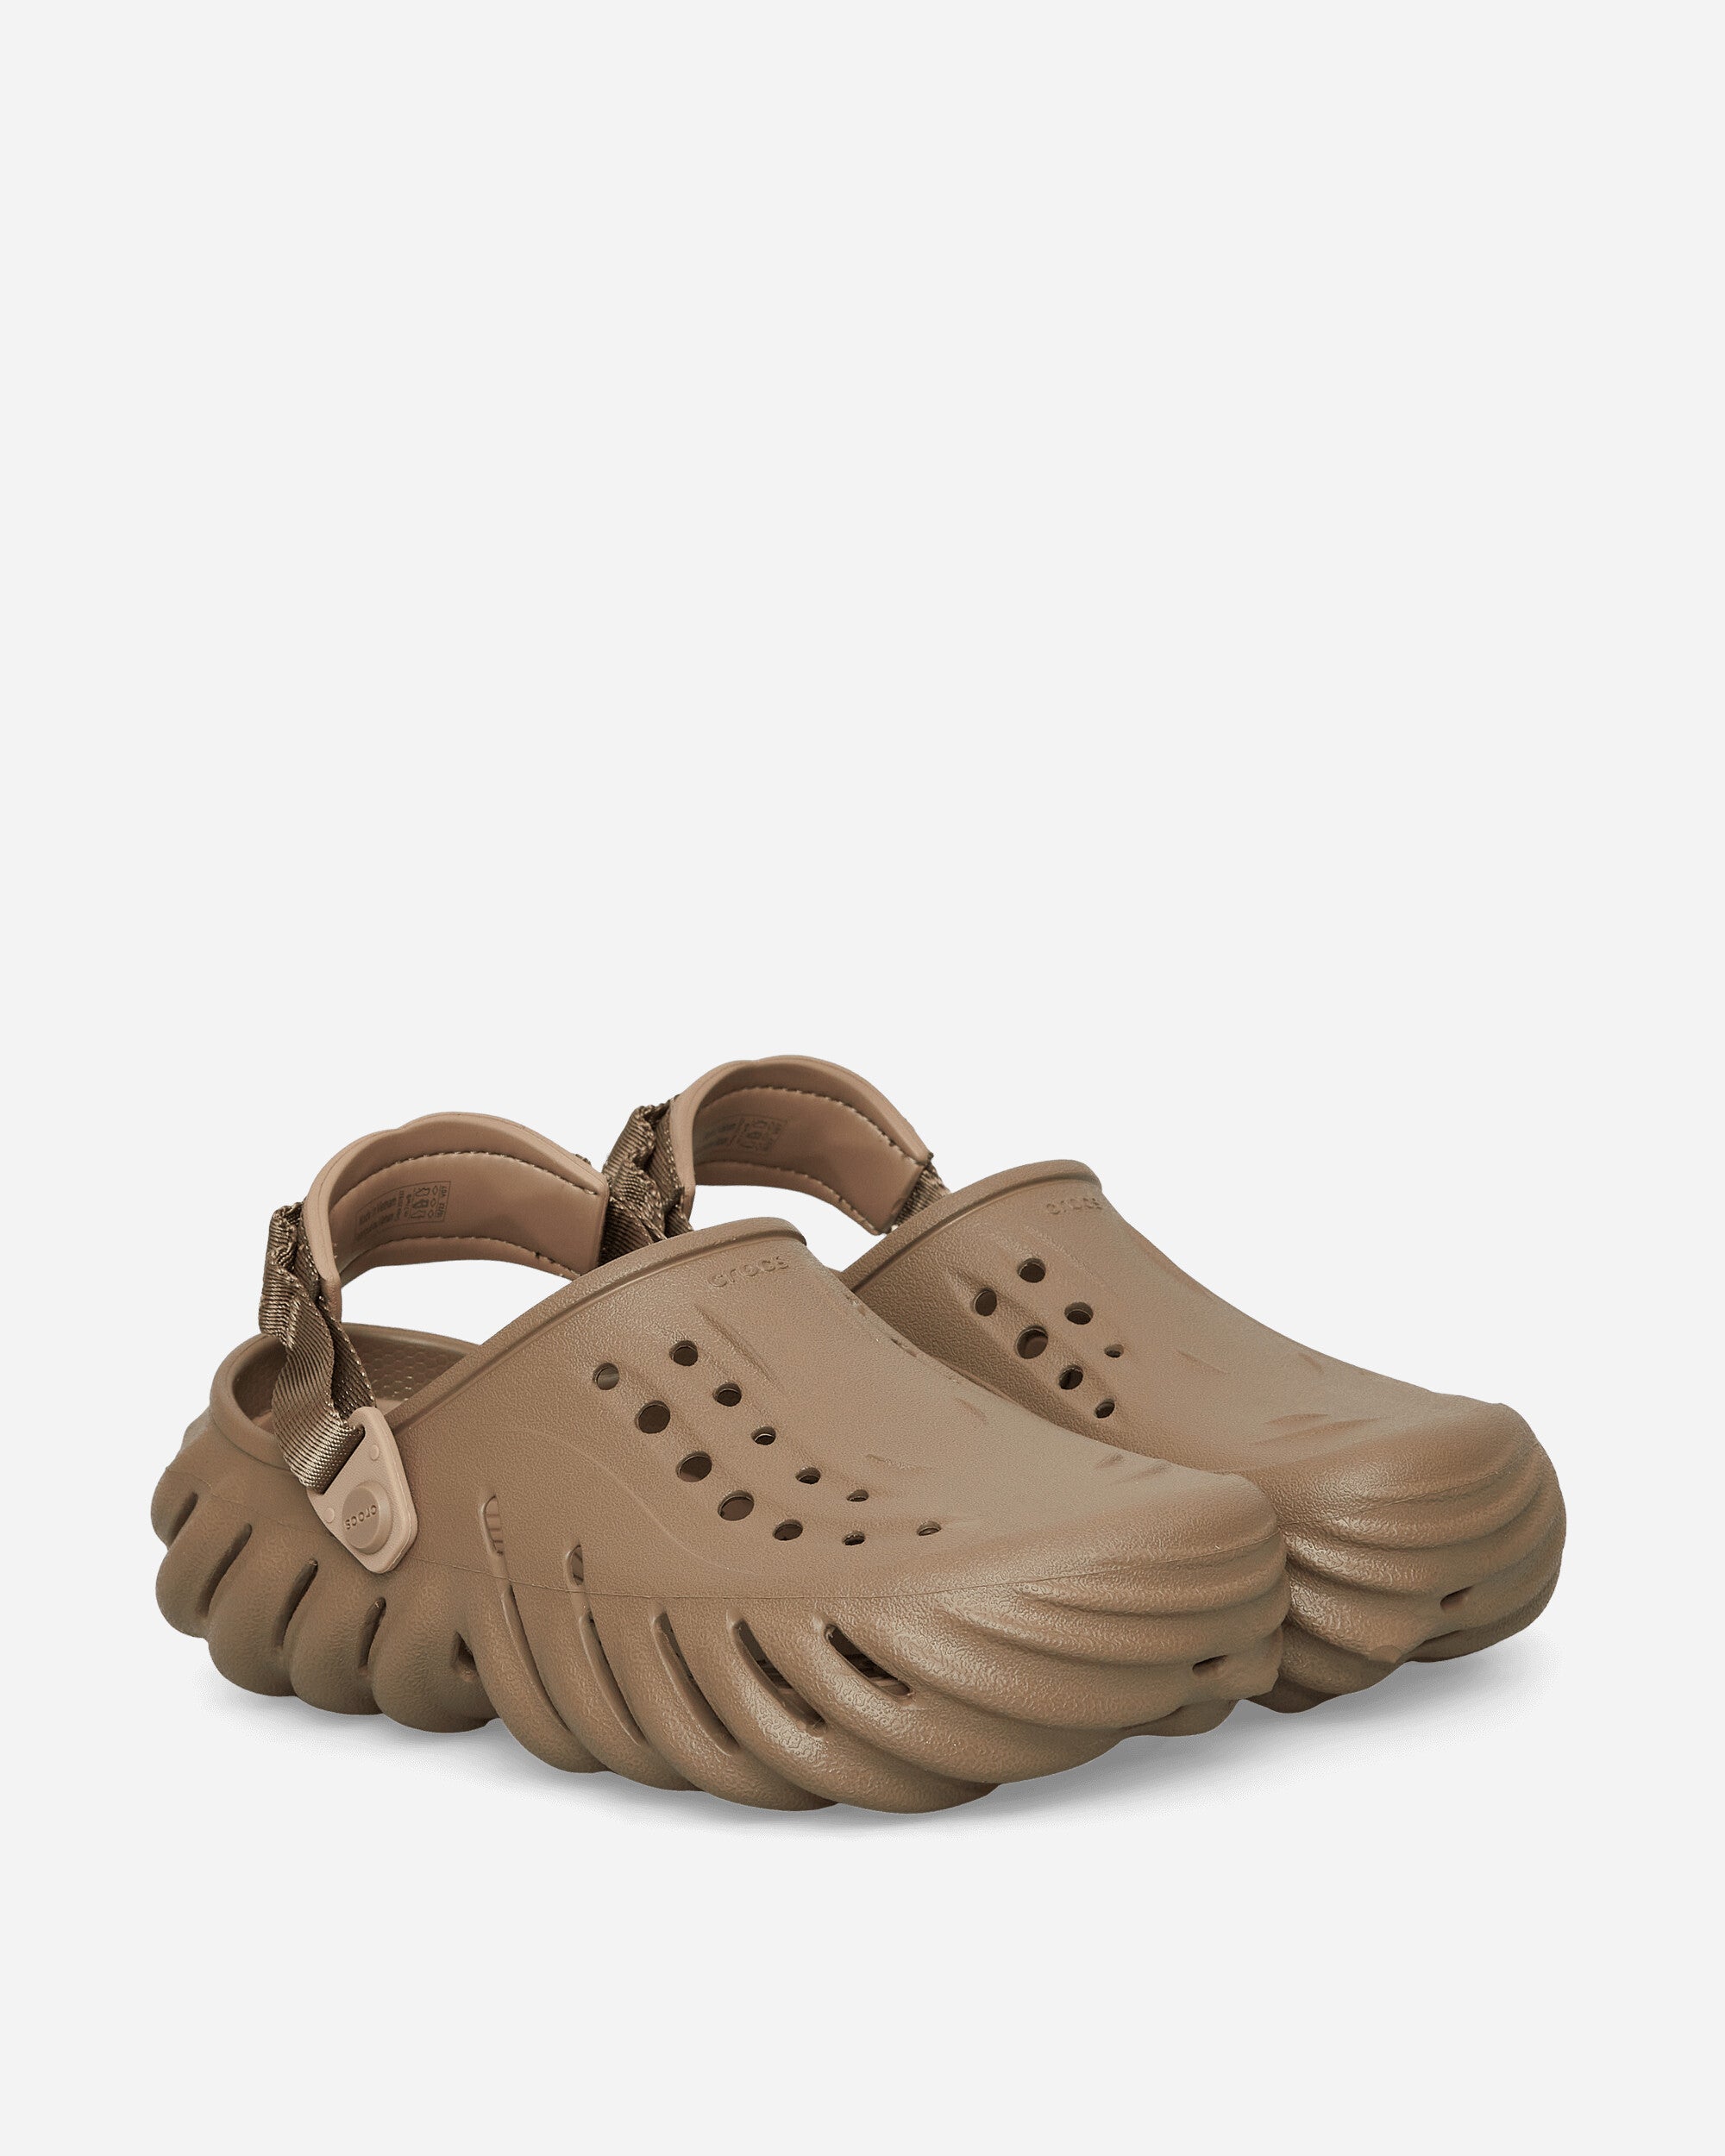 Crocs Crocs X- Clog Khaki Sandals and Slides Sandal CR207937 KHA